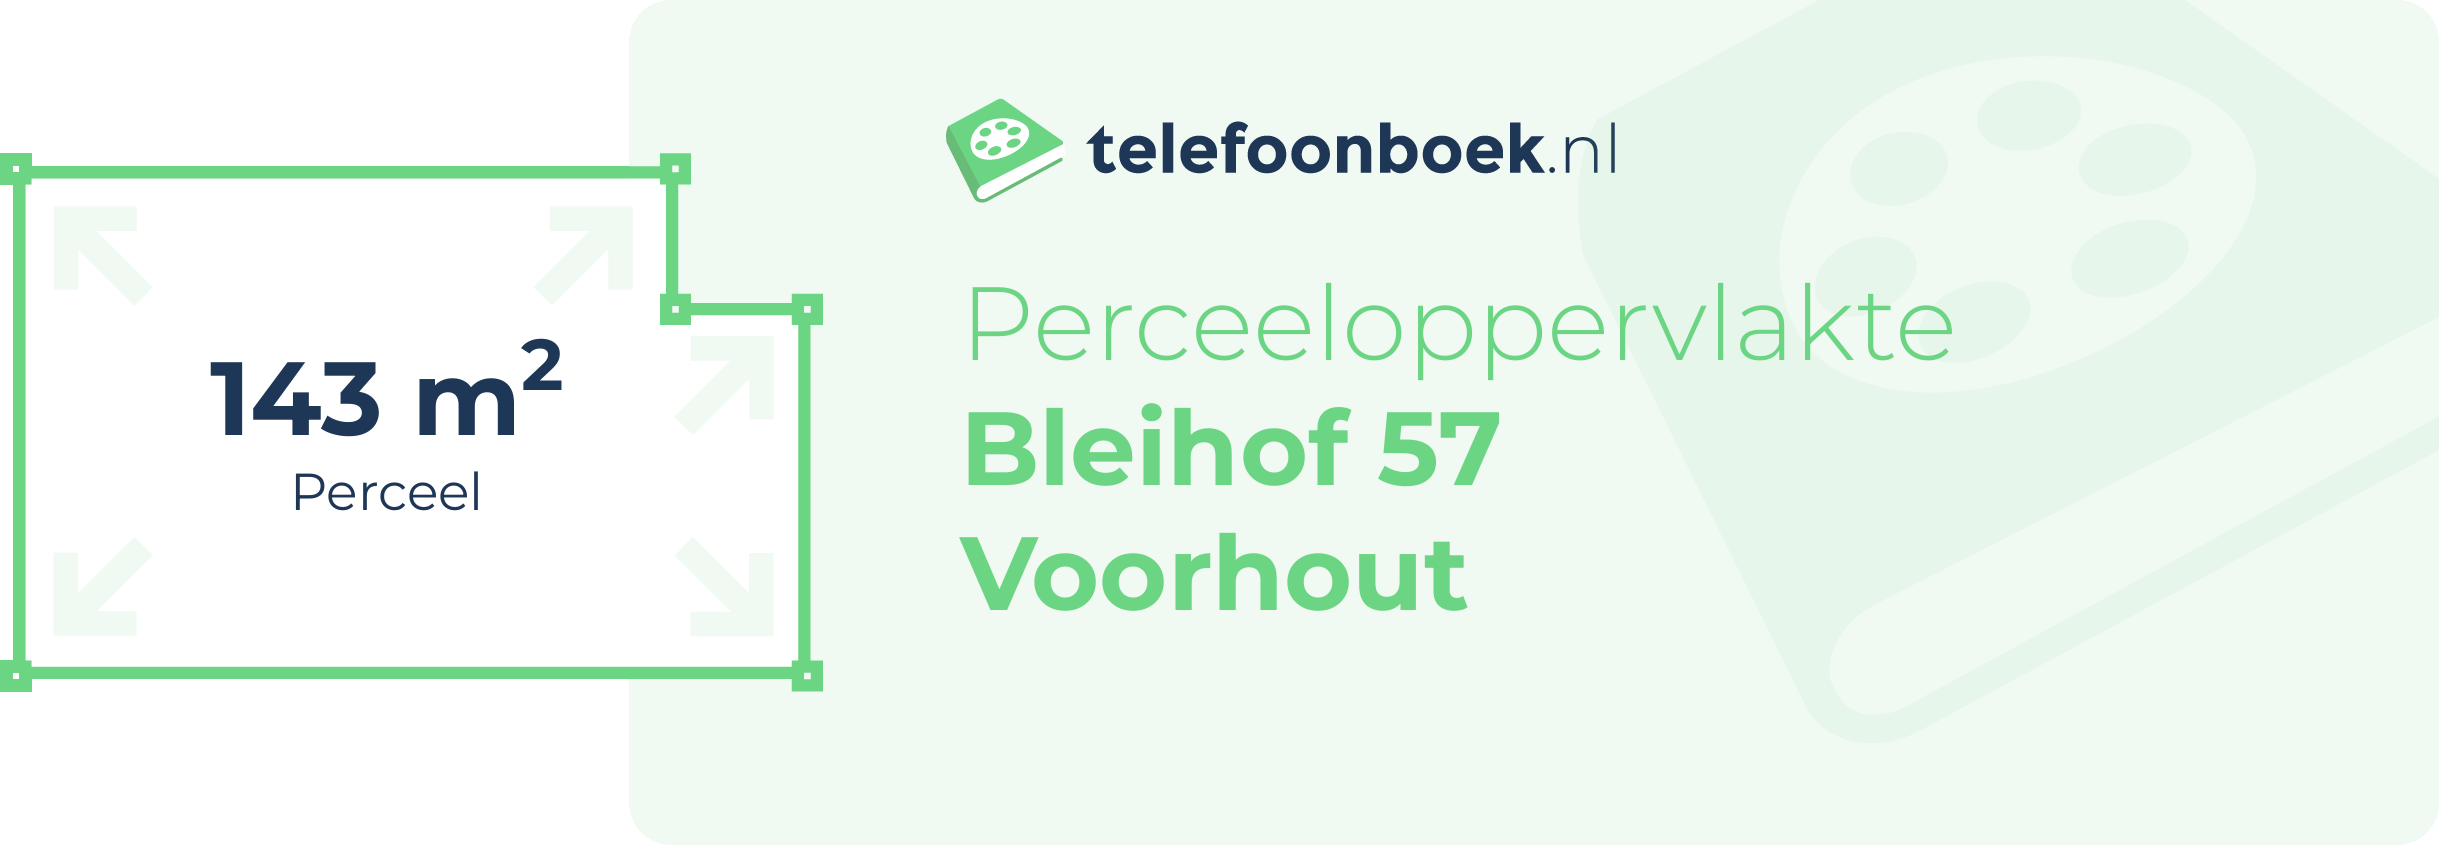 Perceeloppervlakte Bleihof 57 Voorhout